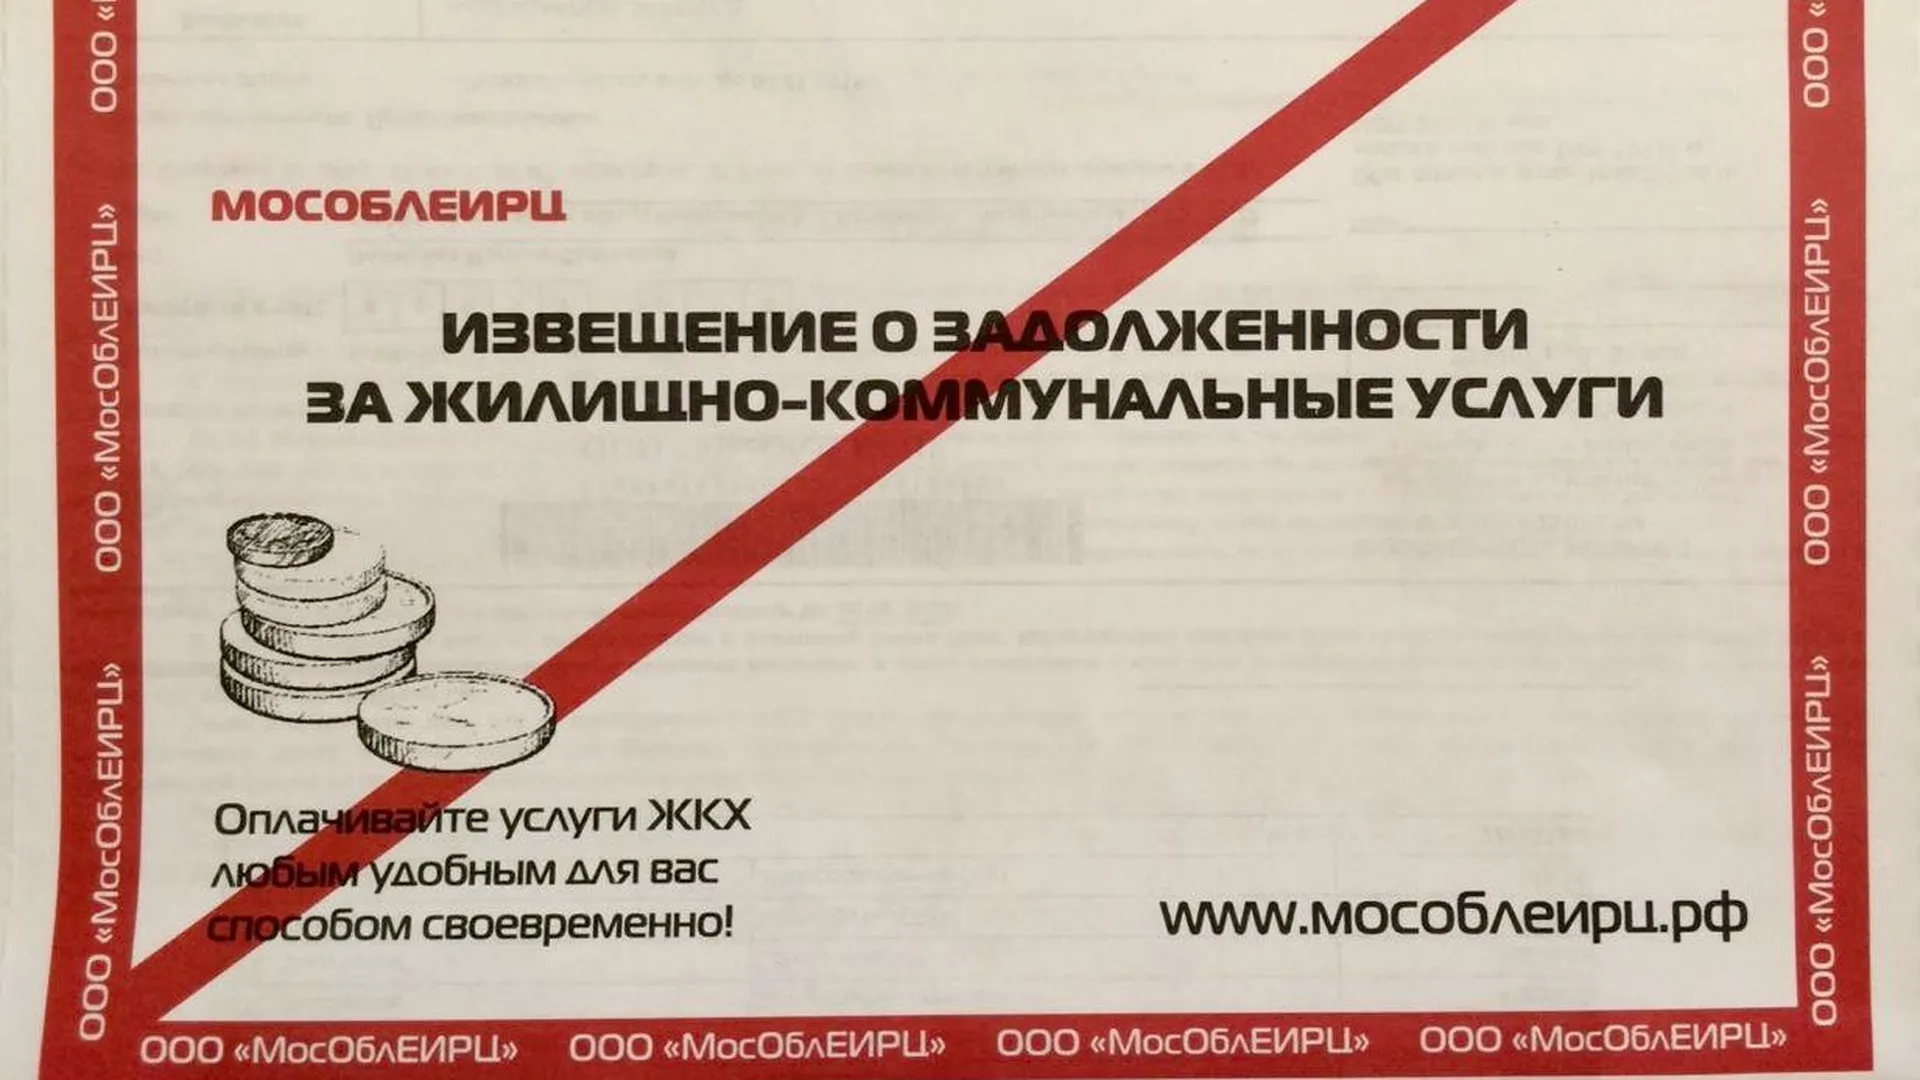 пресс-служба Московского областного единого информационно-расчетного центра (МособлЕИРЦ)